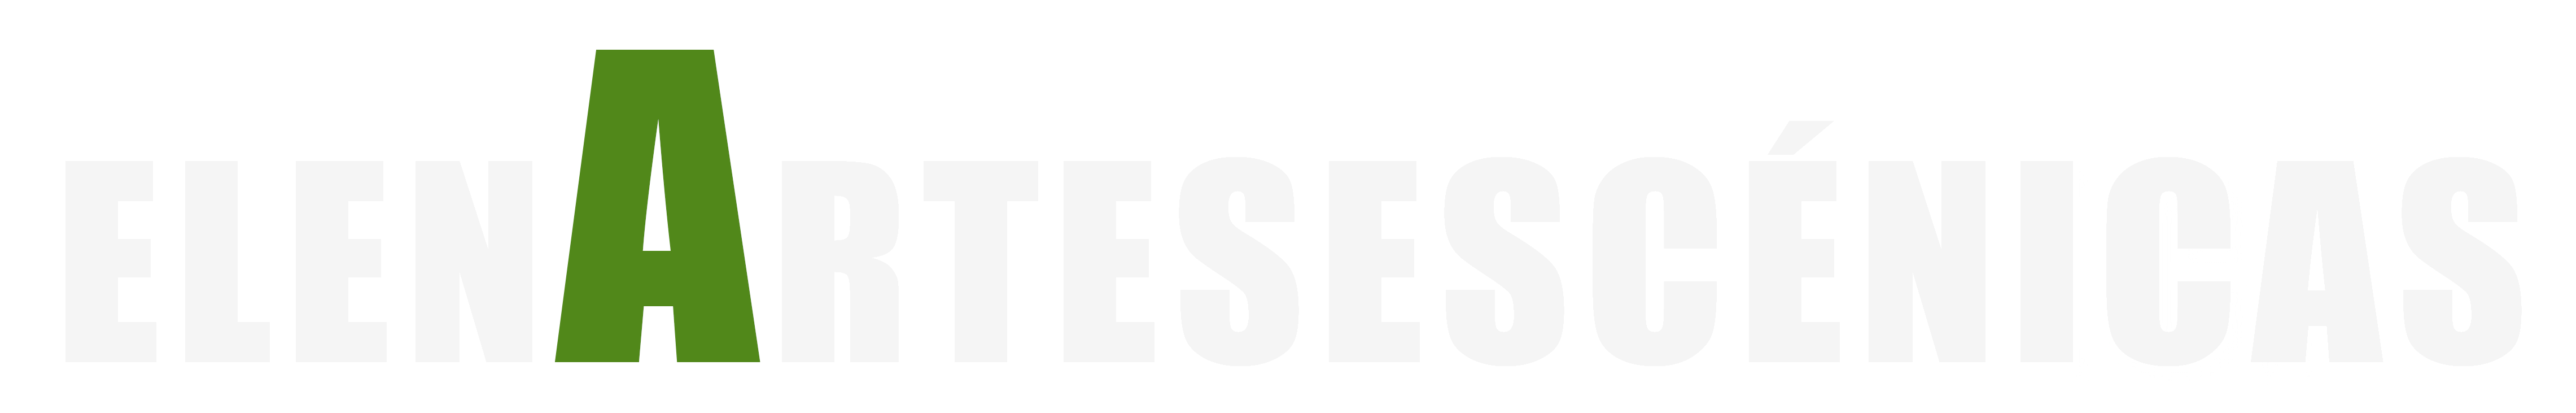 Logo ElenaArtesEscenicas blanco y verde